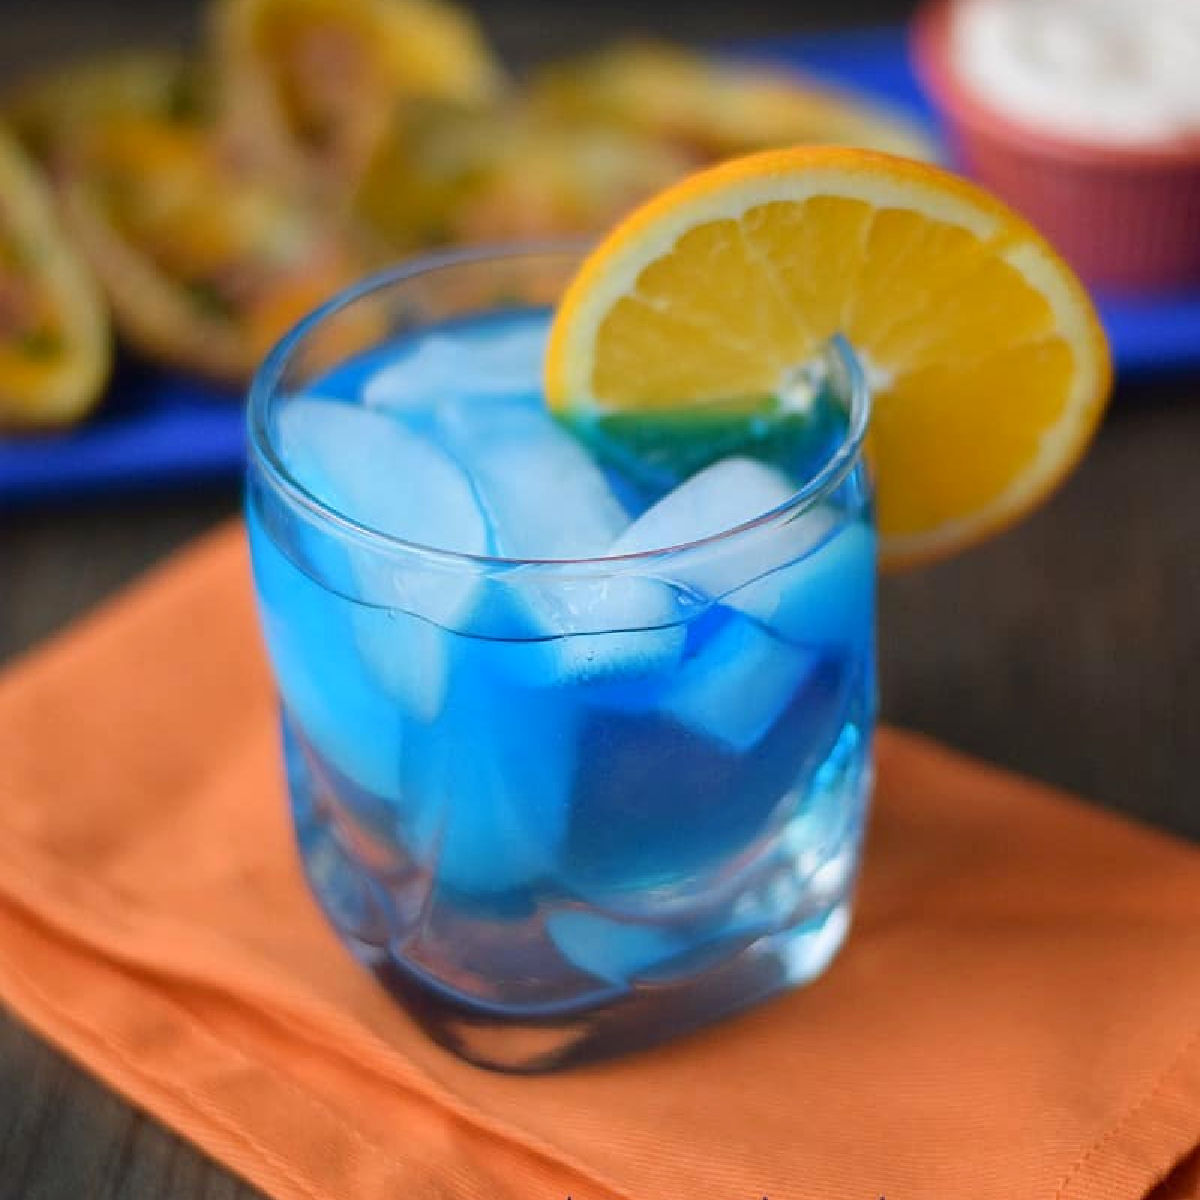 Blue cocktail with orange slice garnish.